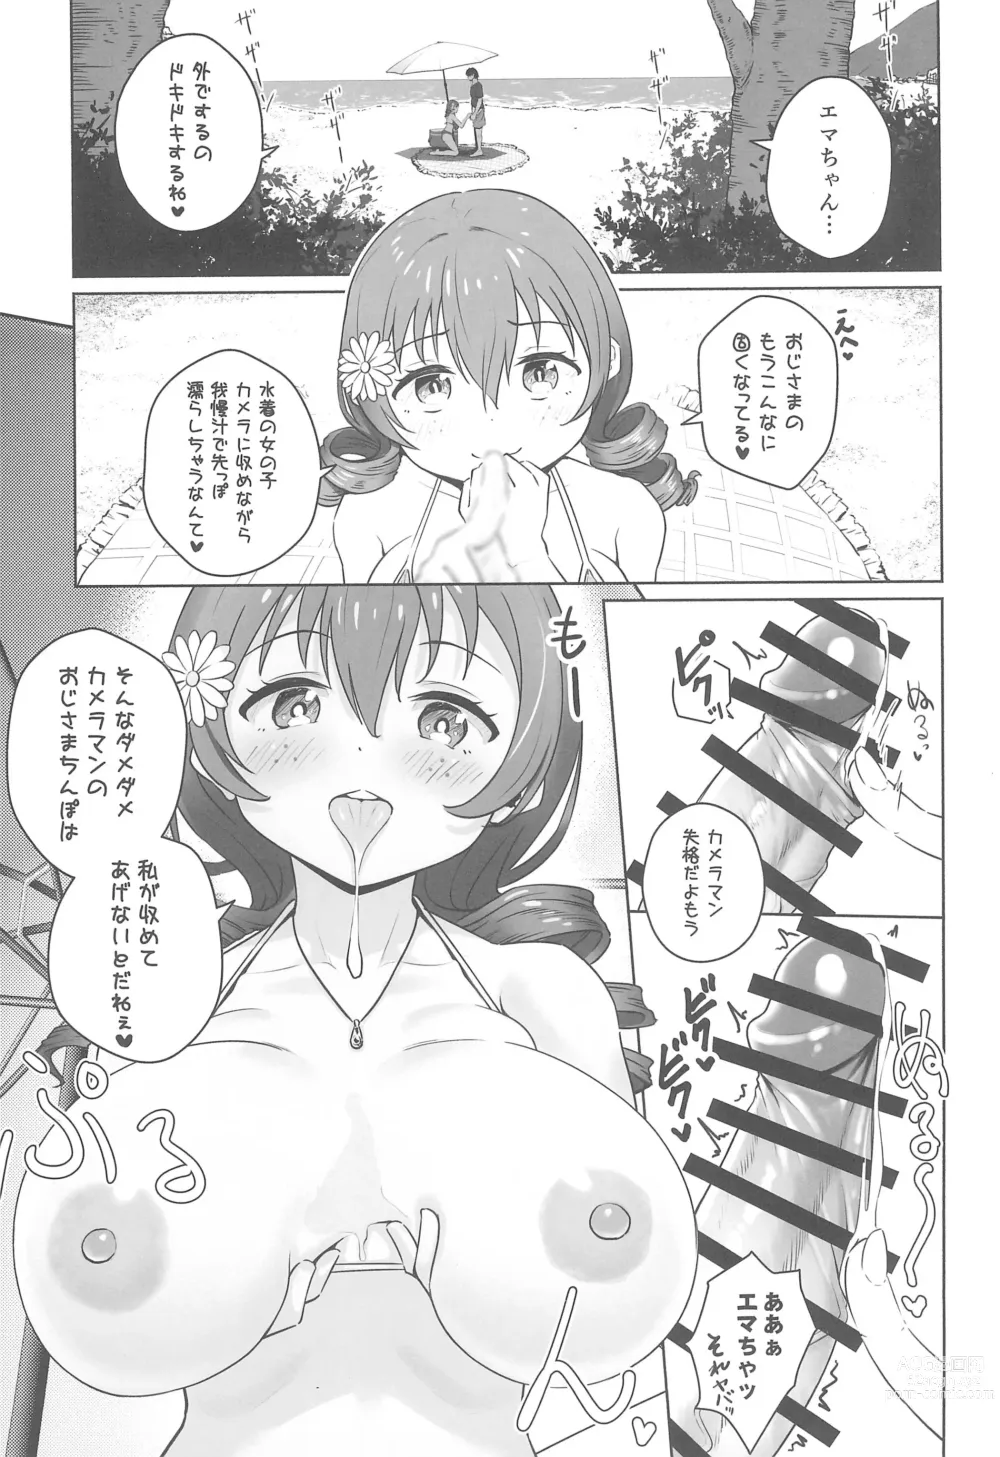 Page 3 of doujinshi Natsu da! Mizugi da! Emma Verde